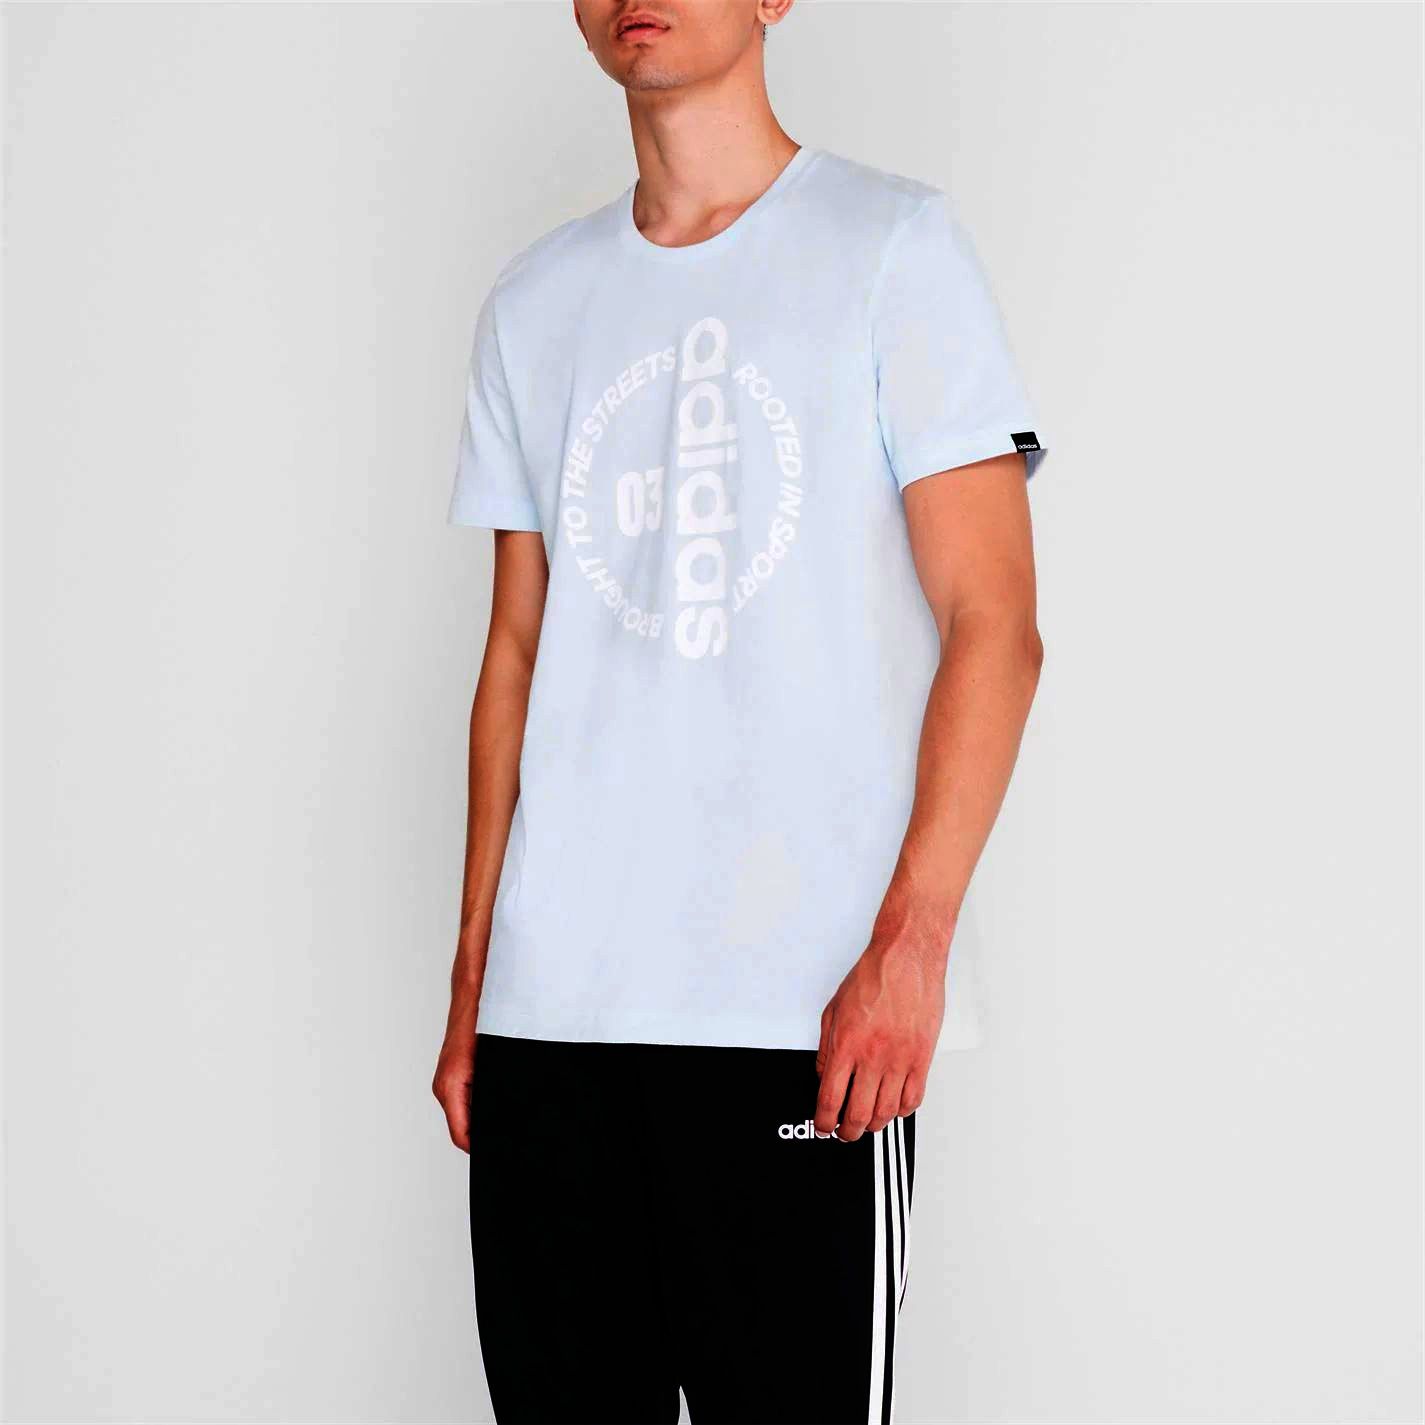 pánské tričko ADIDAS - LTBLUE/WHITE - 2XL